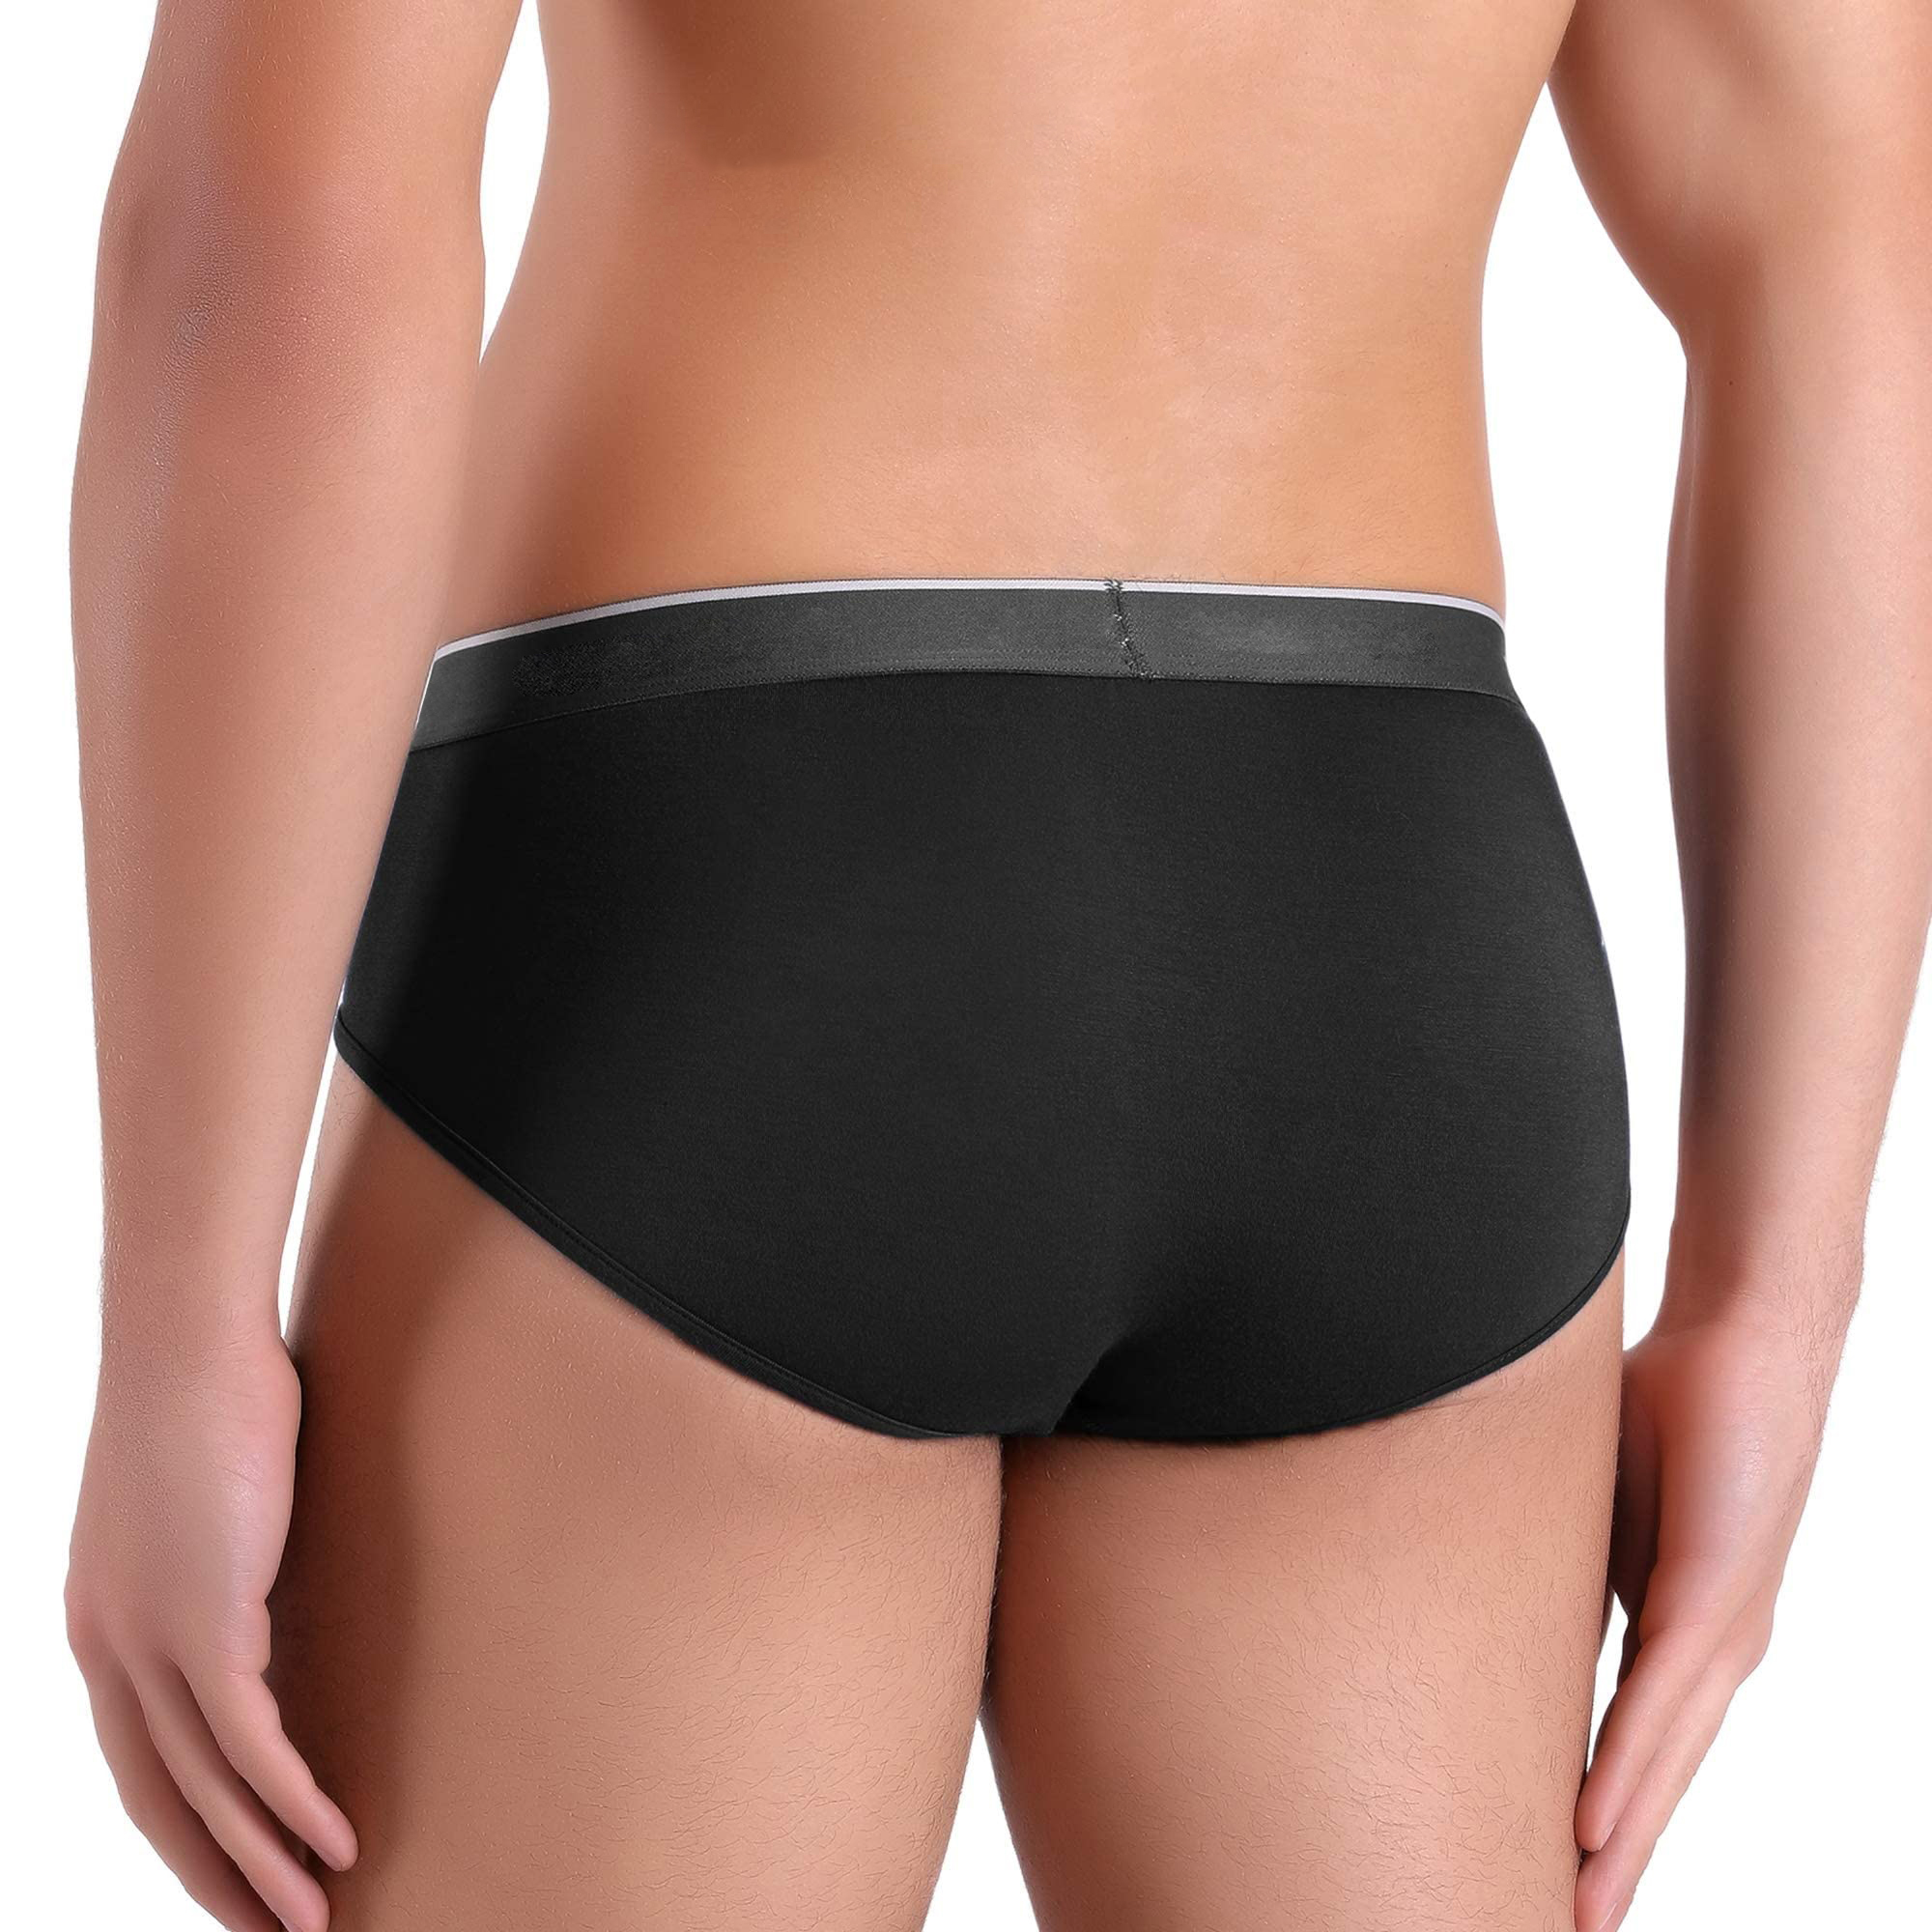 men's underwear (8)